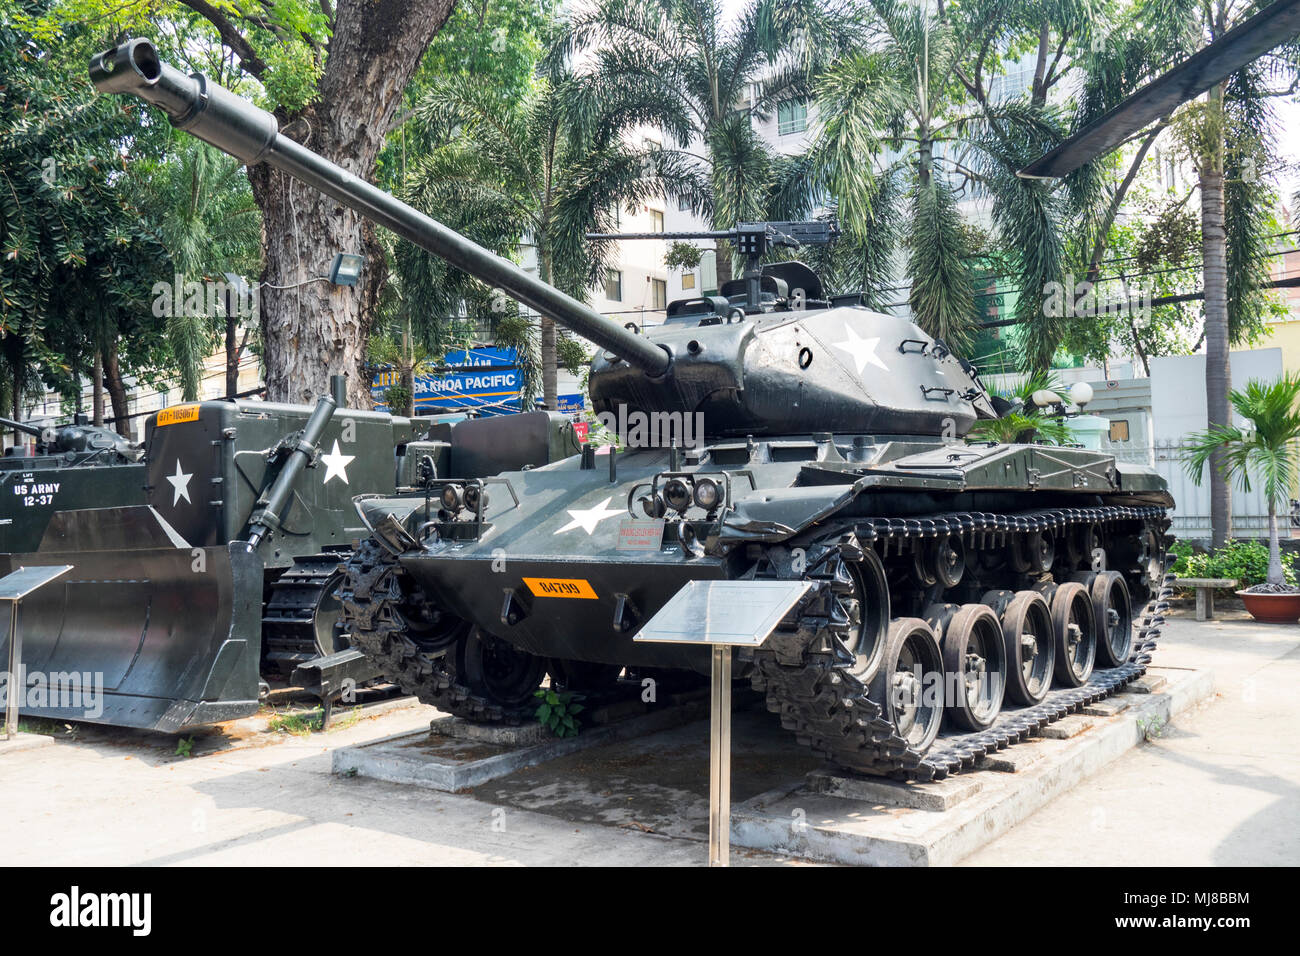 US Army M41 Walker Bulldog tank et militaires D.7 E bulldozer de la guerre du Vietnam à l'affiche au Musée des débris de guerre, Ho Chi Minh City, Vietnam. Banque D'Images